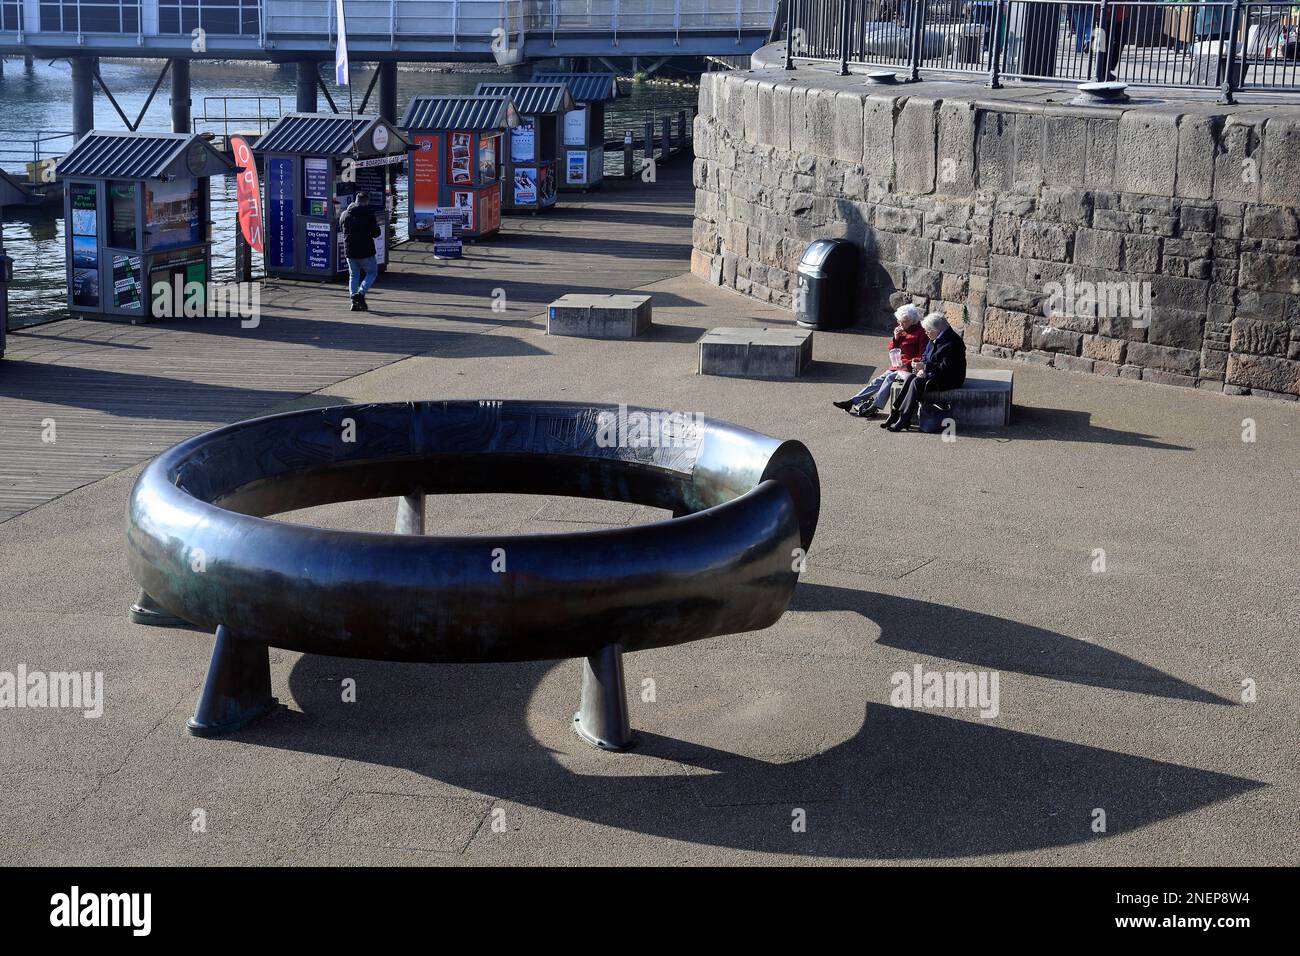 Grande installation en bronze - sculpture - anneau celtique - par Harvey Hood, 1993. Près des pontons d'atterrissage à Mermaid Quay, Cardiff. Février 2023. Hiver. Banque D'Images